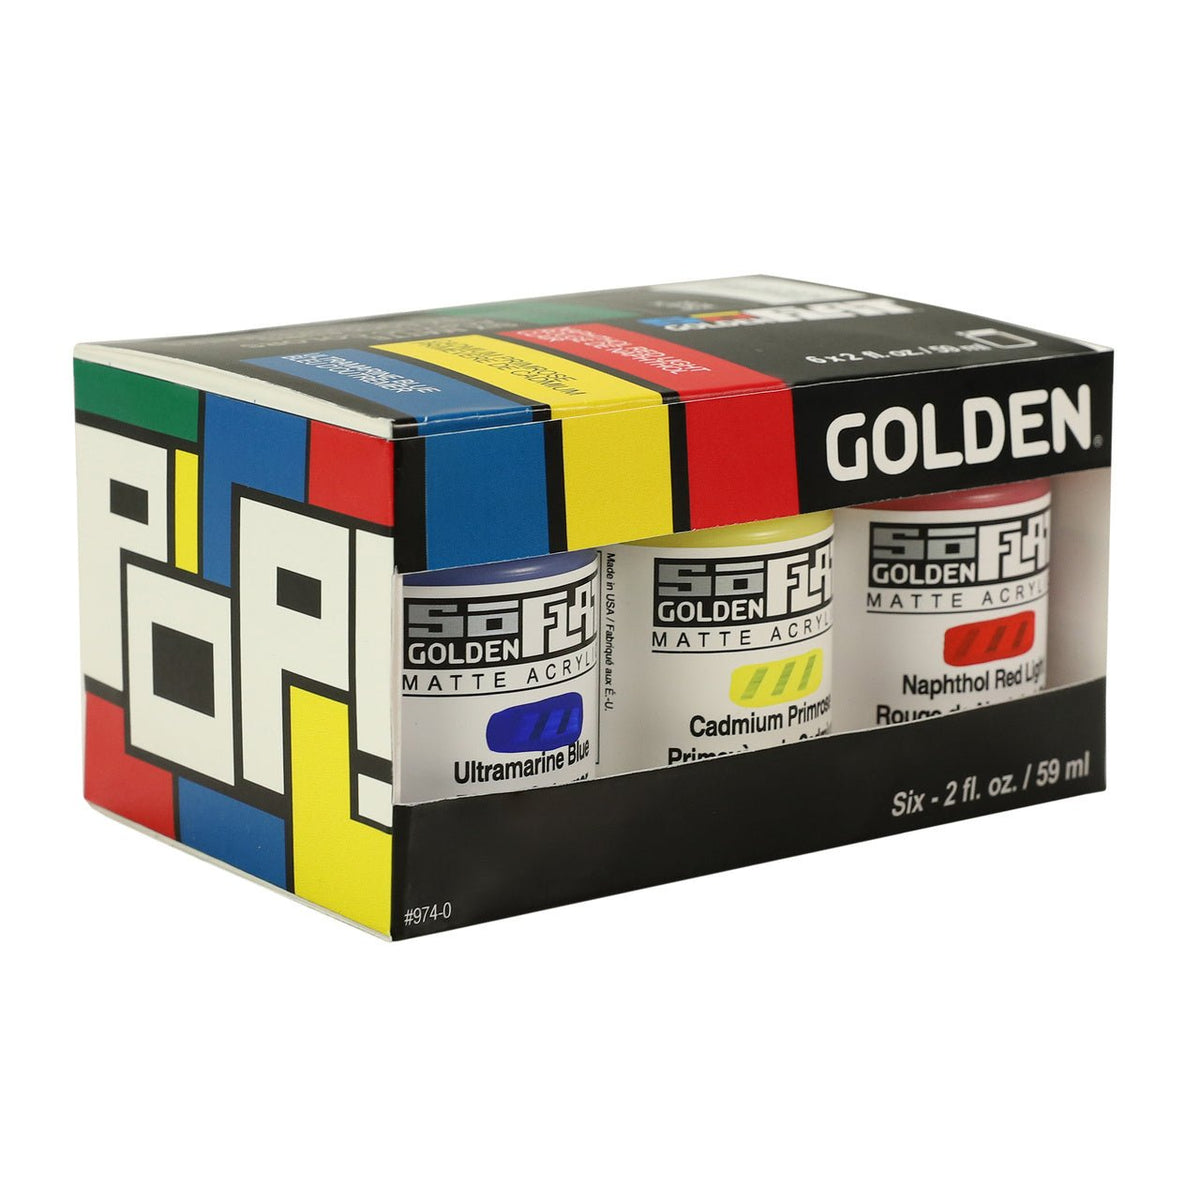 Golden SoFlat Matte Acrylic Paints - 6 Color Pop Set - merriartist.com